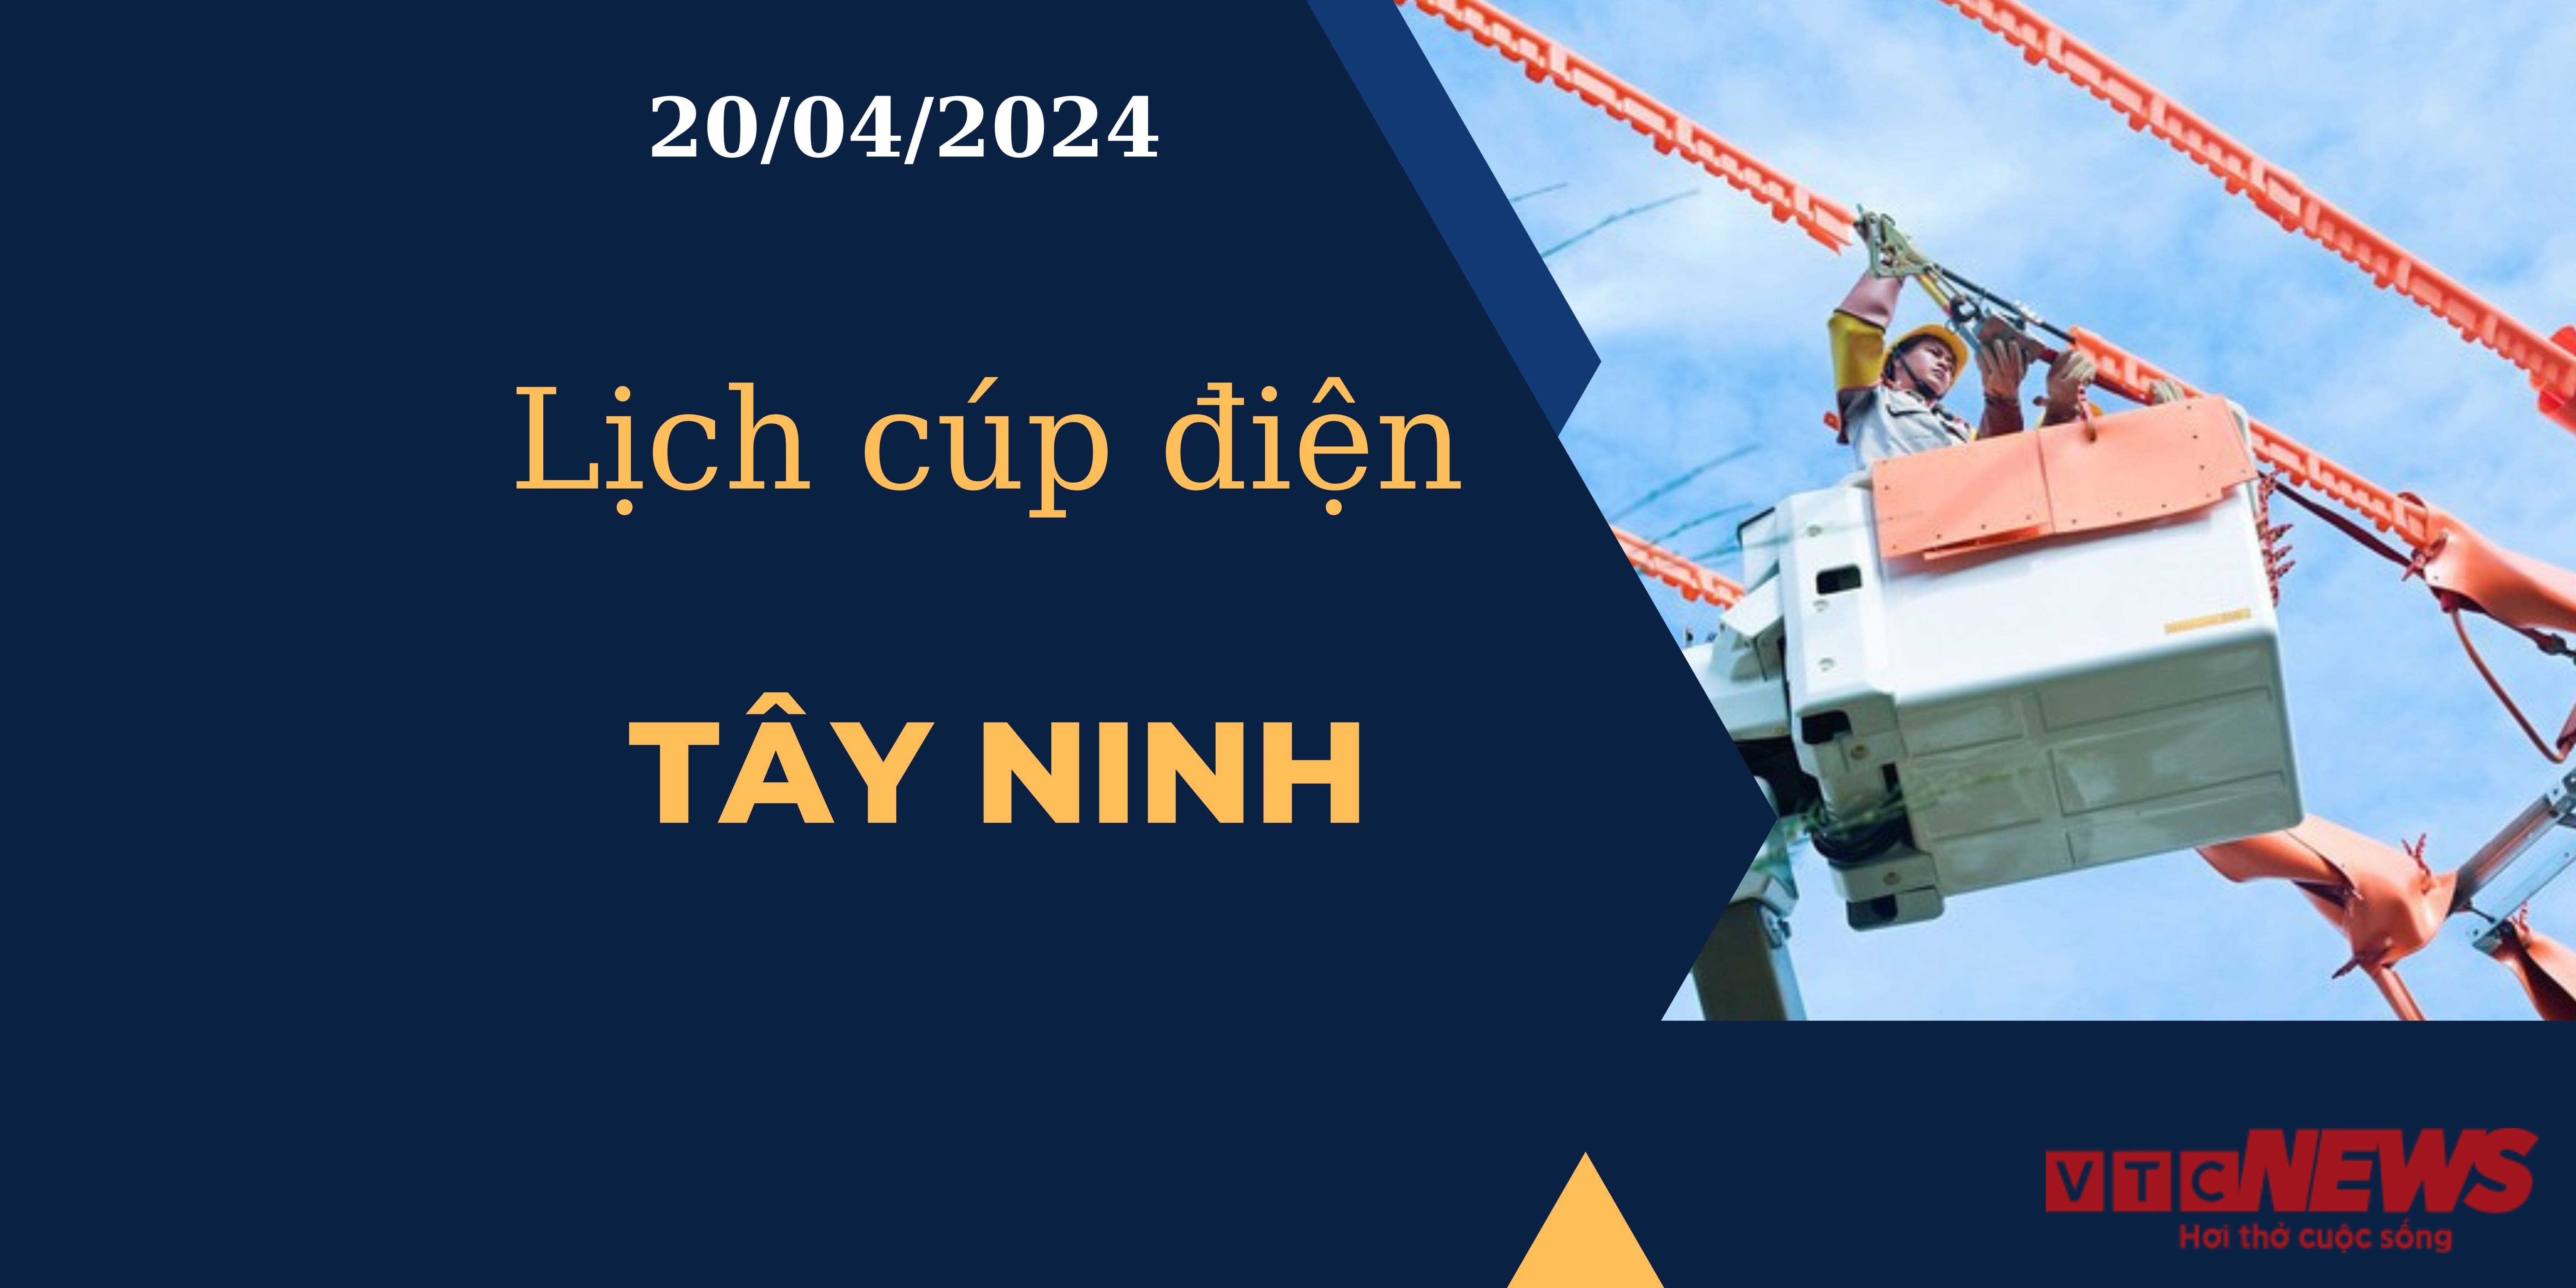 Lịch cúp điện hôm nay tại Tây Ninh ngày 20/04/2024